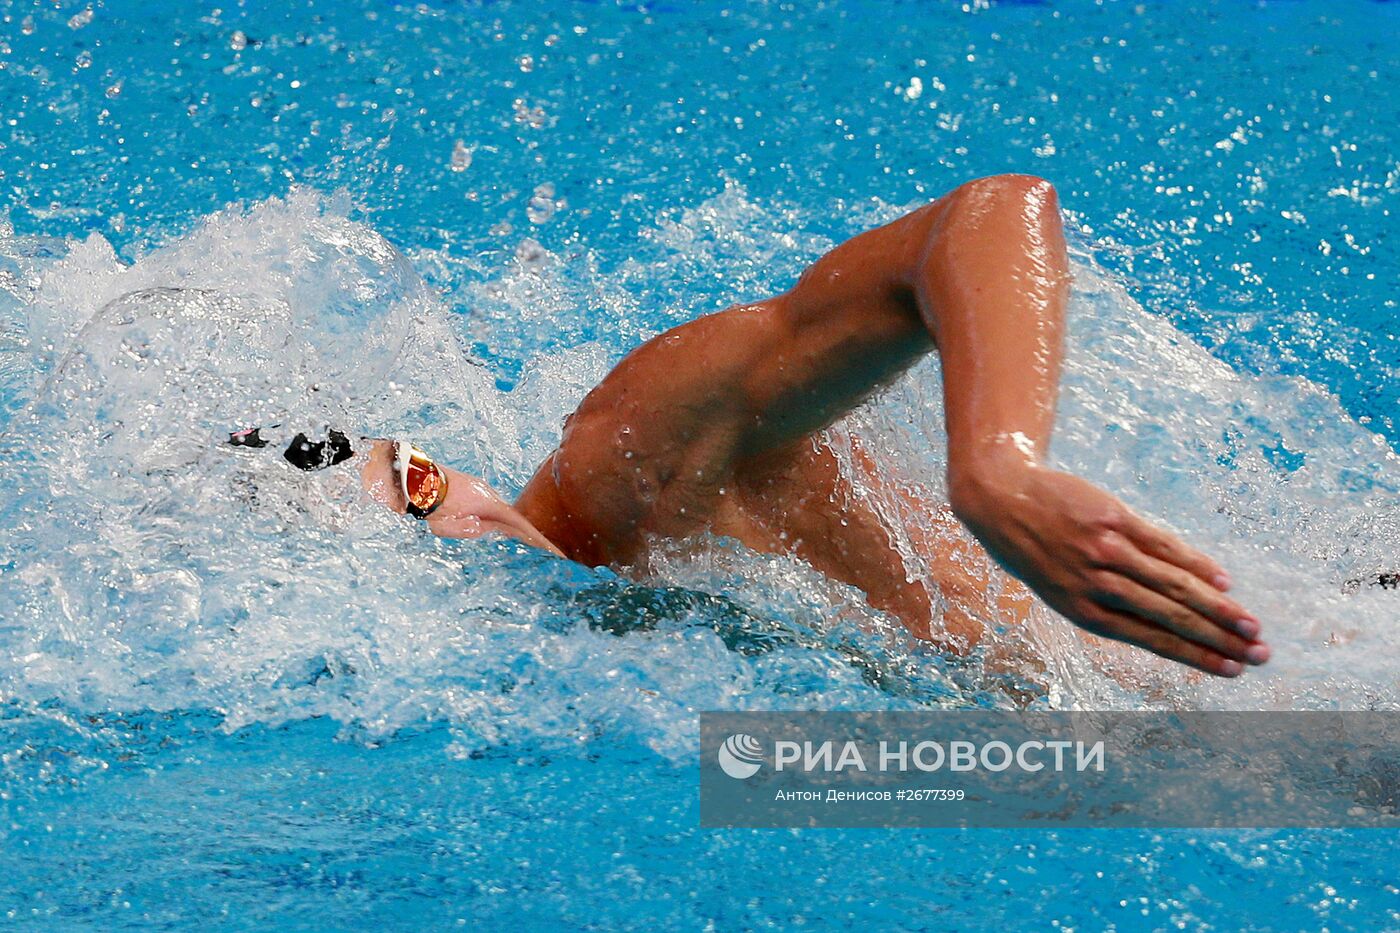 Чемпионат мира FINA 2015. Плавание. Восьмой день. Утренняя сессия